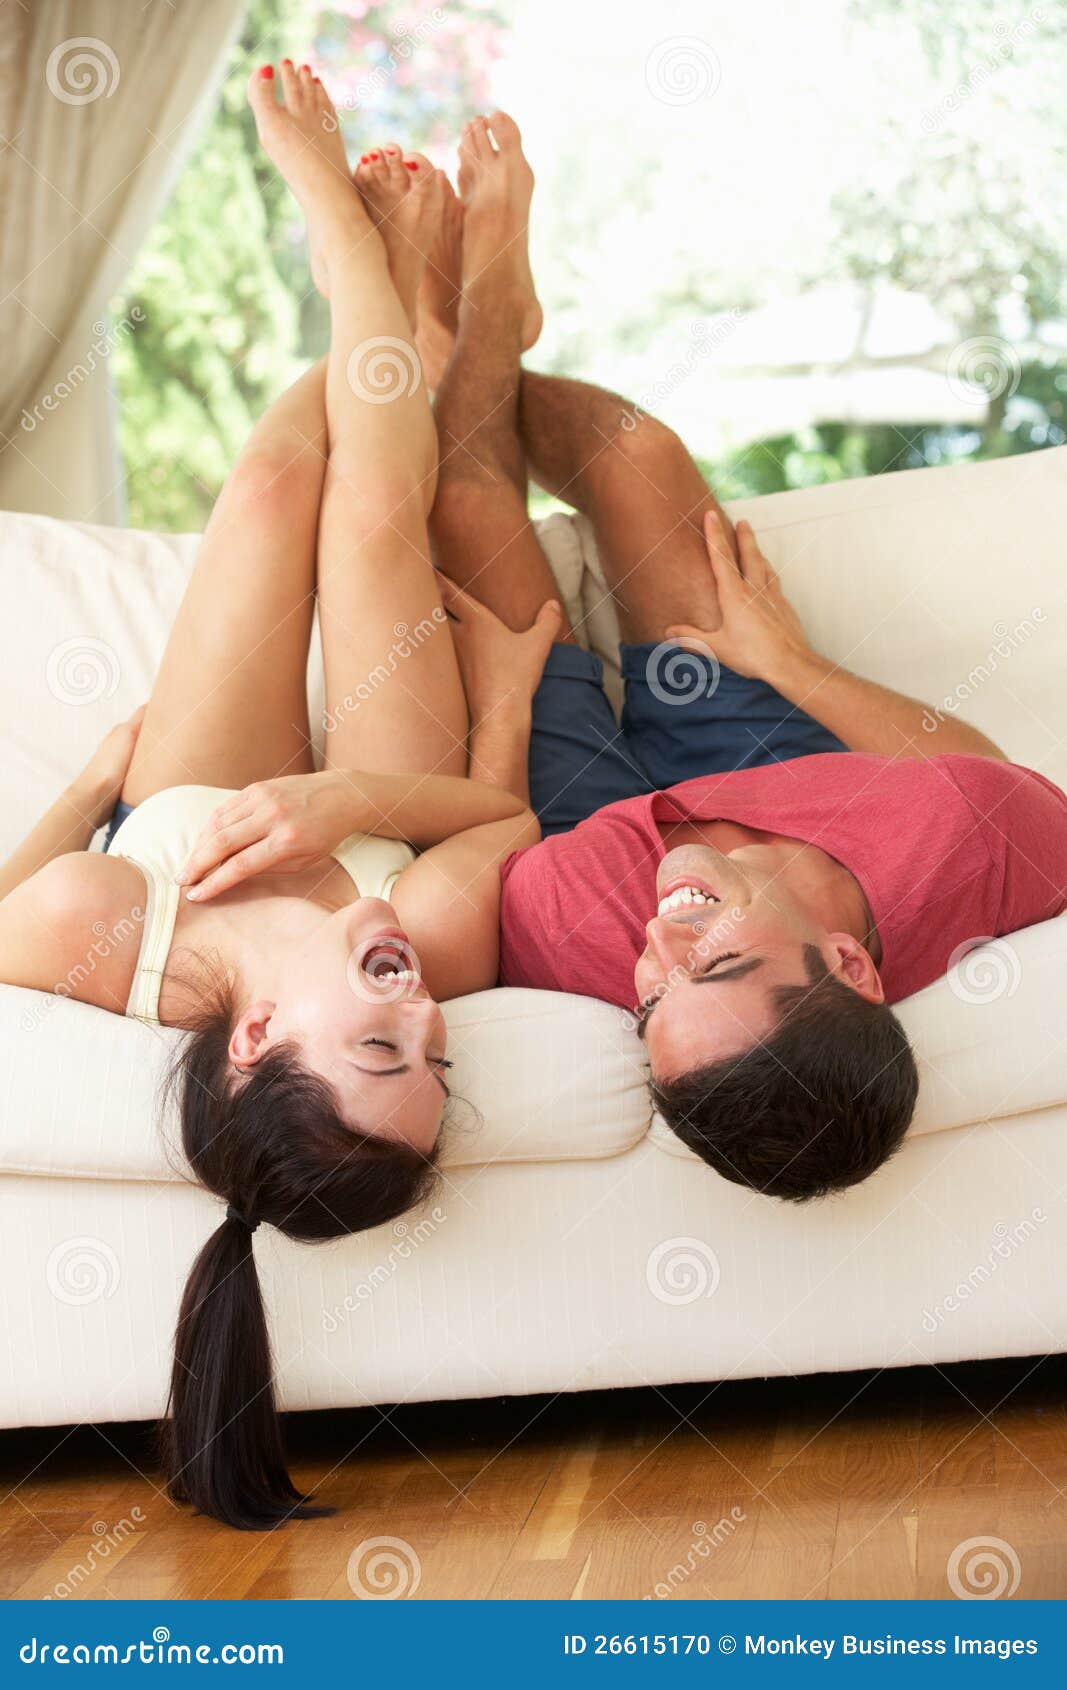 Поза миссионера зрелые. Пара лежит. Лежать на диване вверх ногами. Поза на диване к верх ногами. Поза девушка на диване с мужчиной.